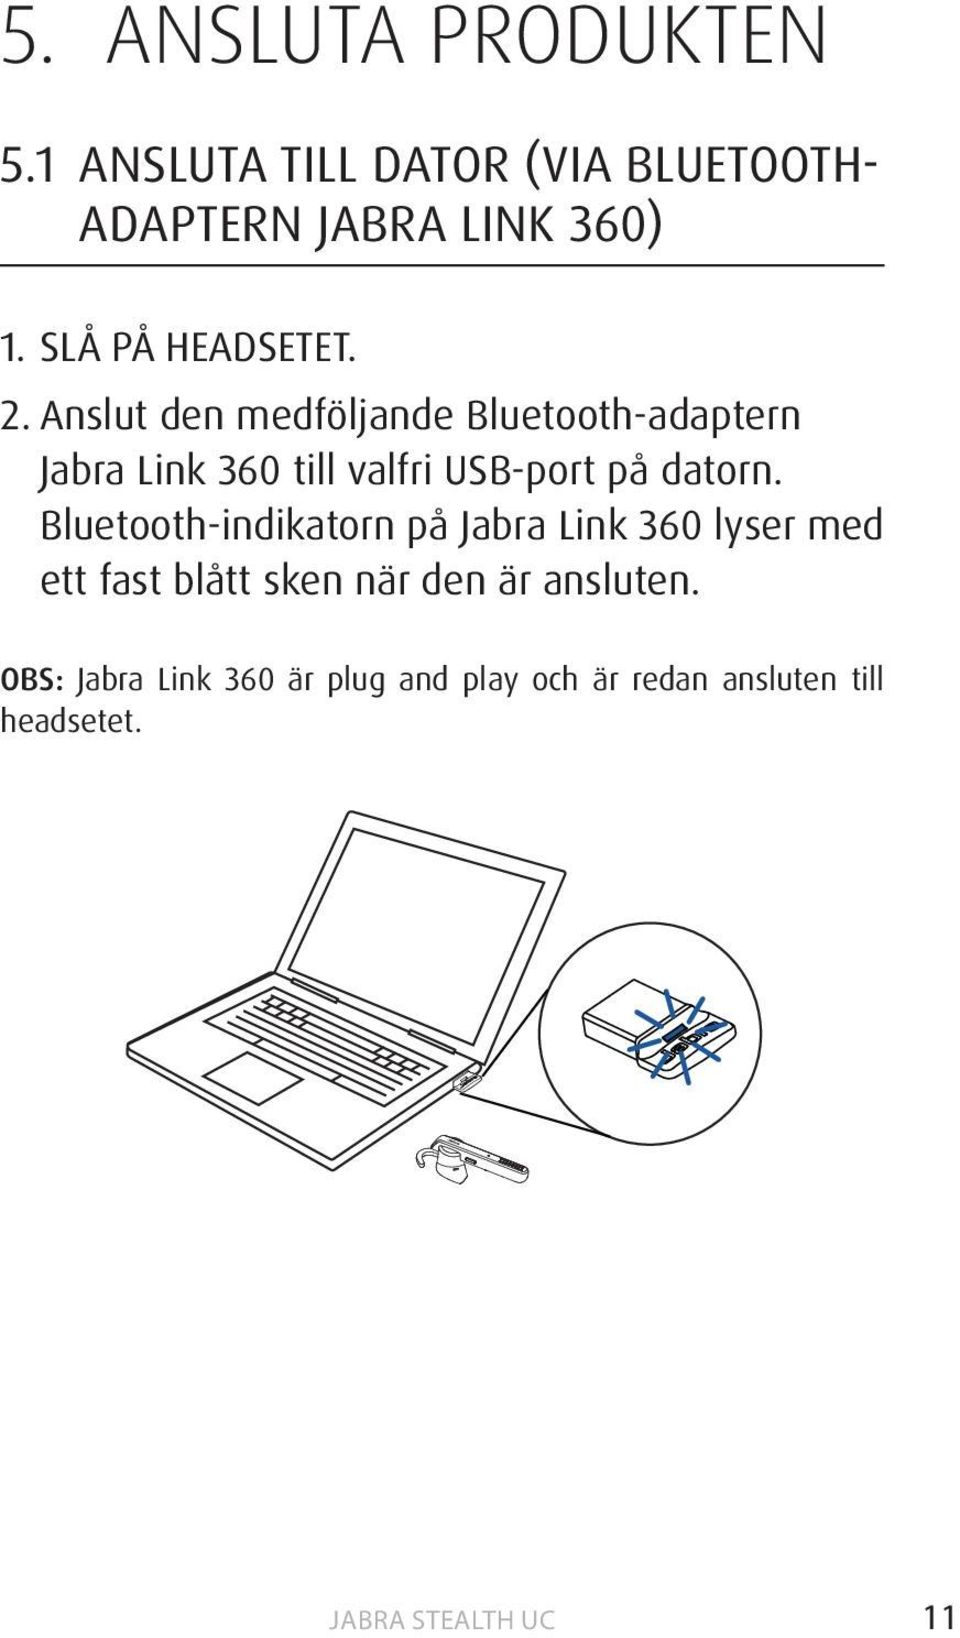 Anslut den medföljande Bluetooth-adaptern Jabra Link 360 till valfri USB-port på datorn.